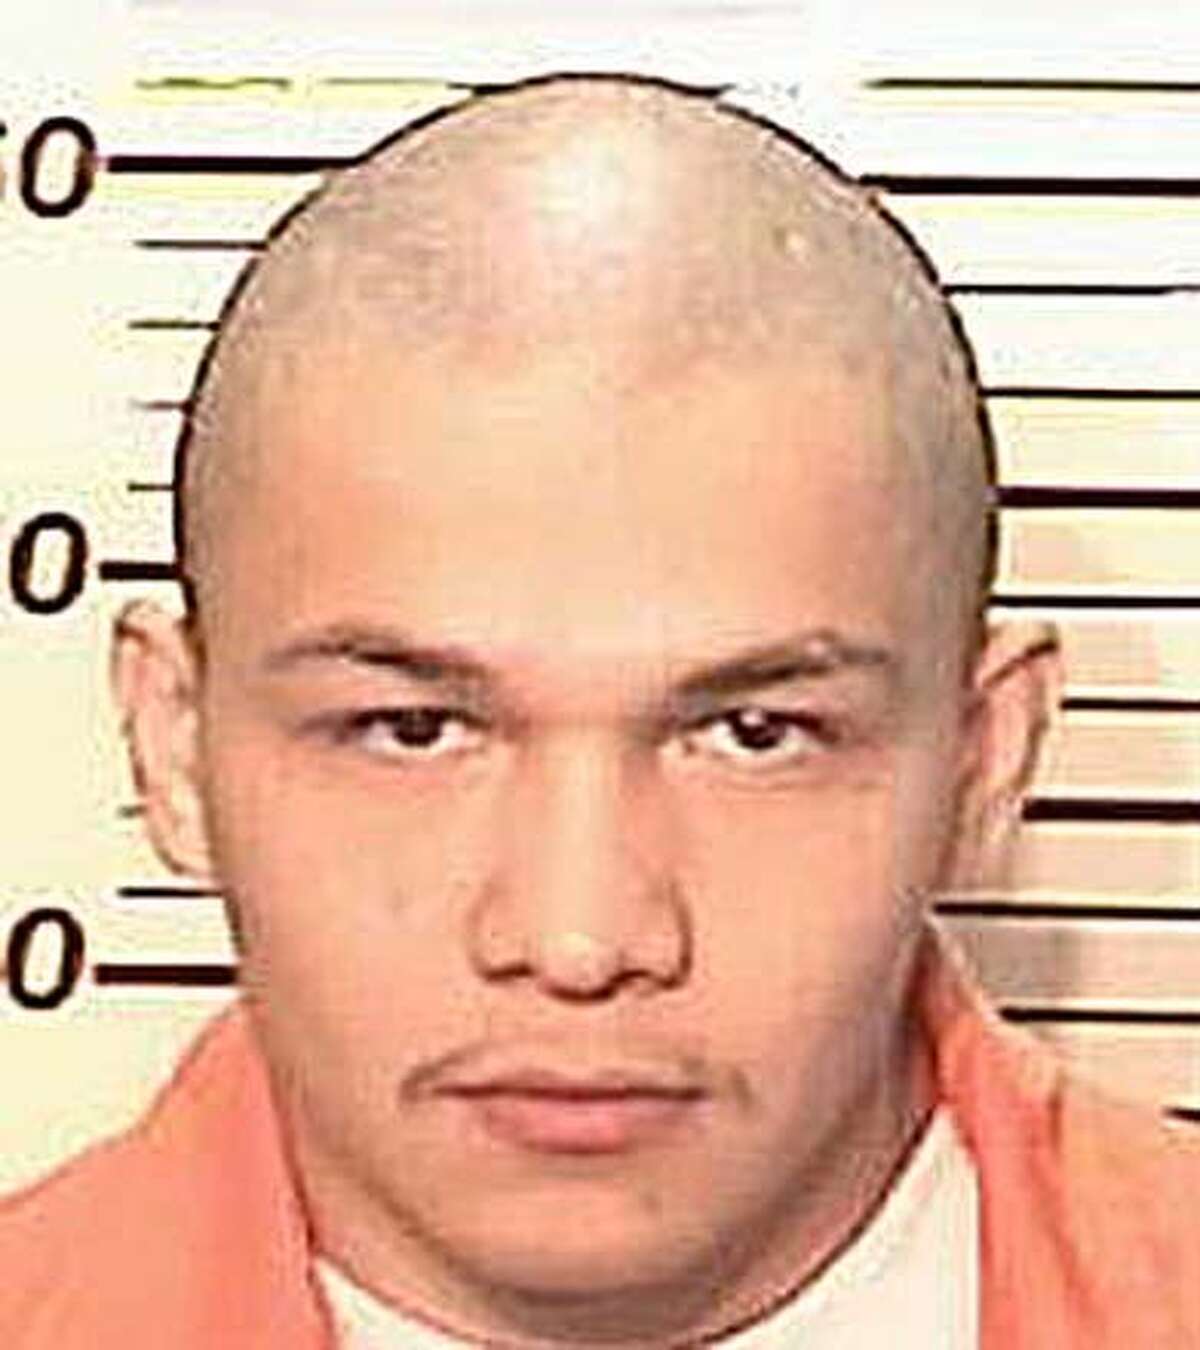 Inmate sues over escape